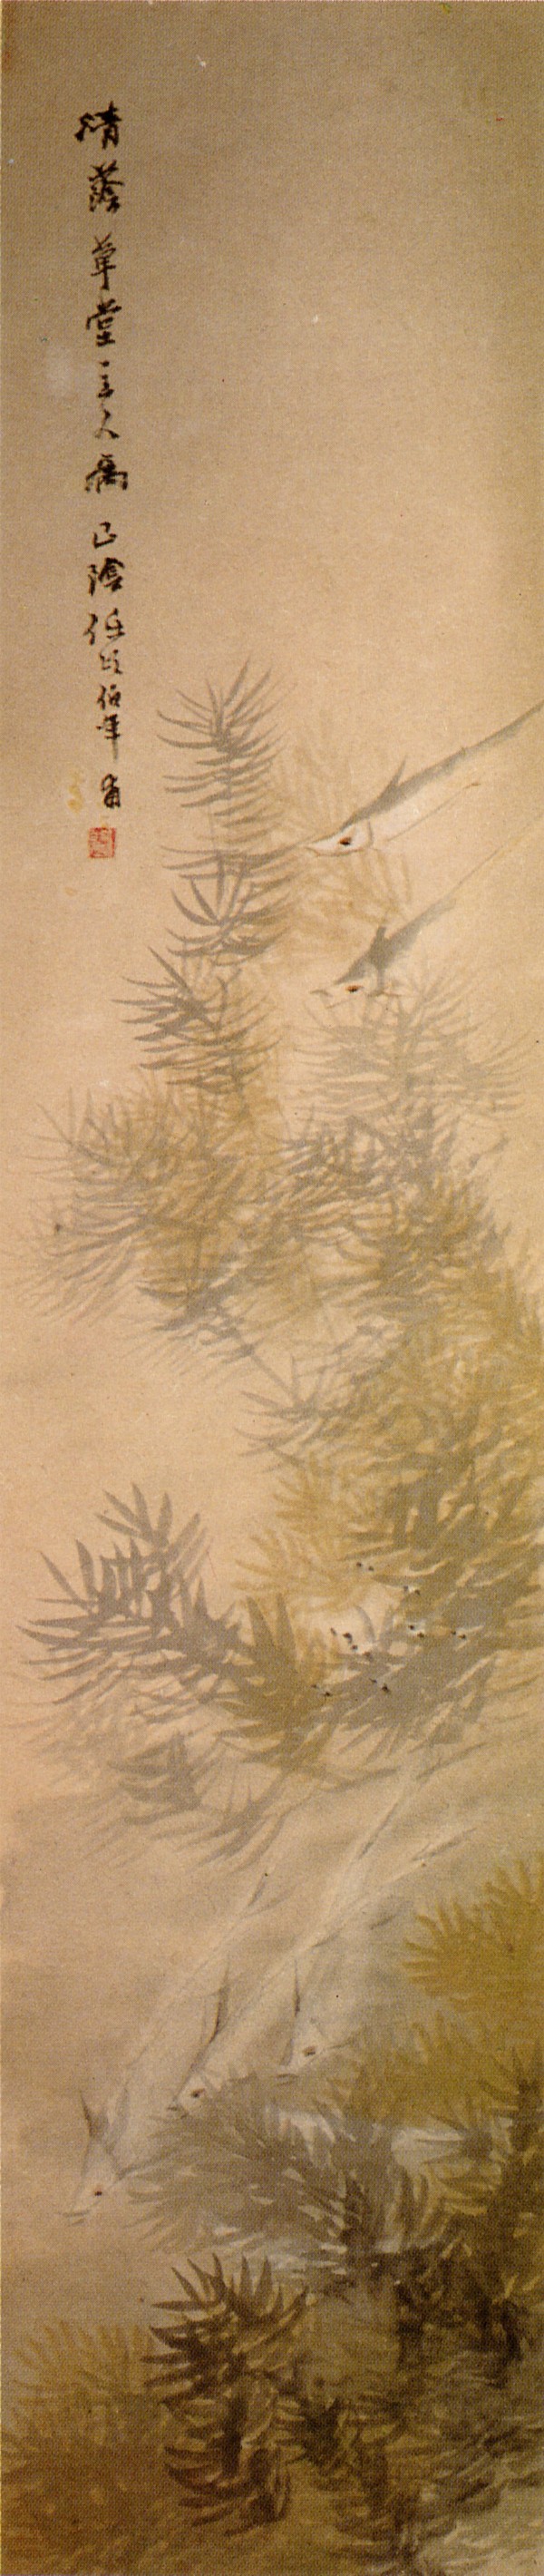 鱼藻图轴